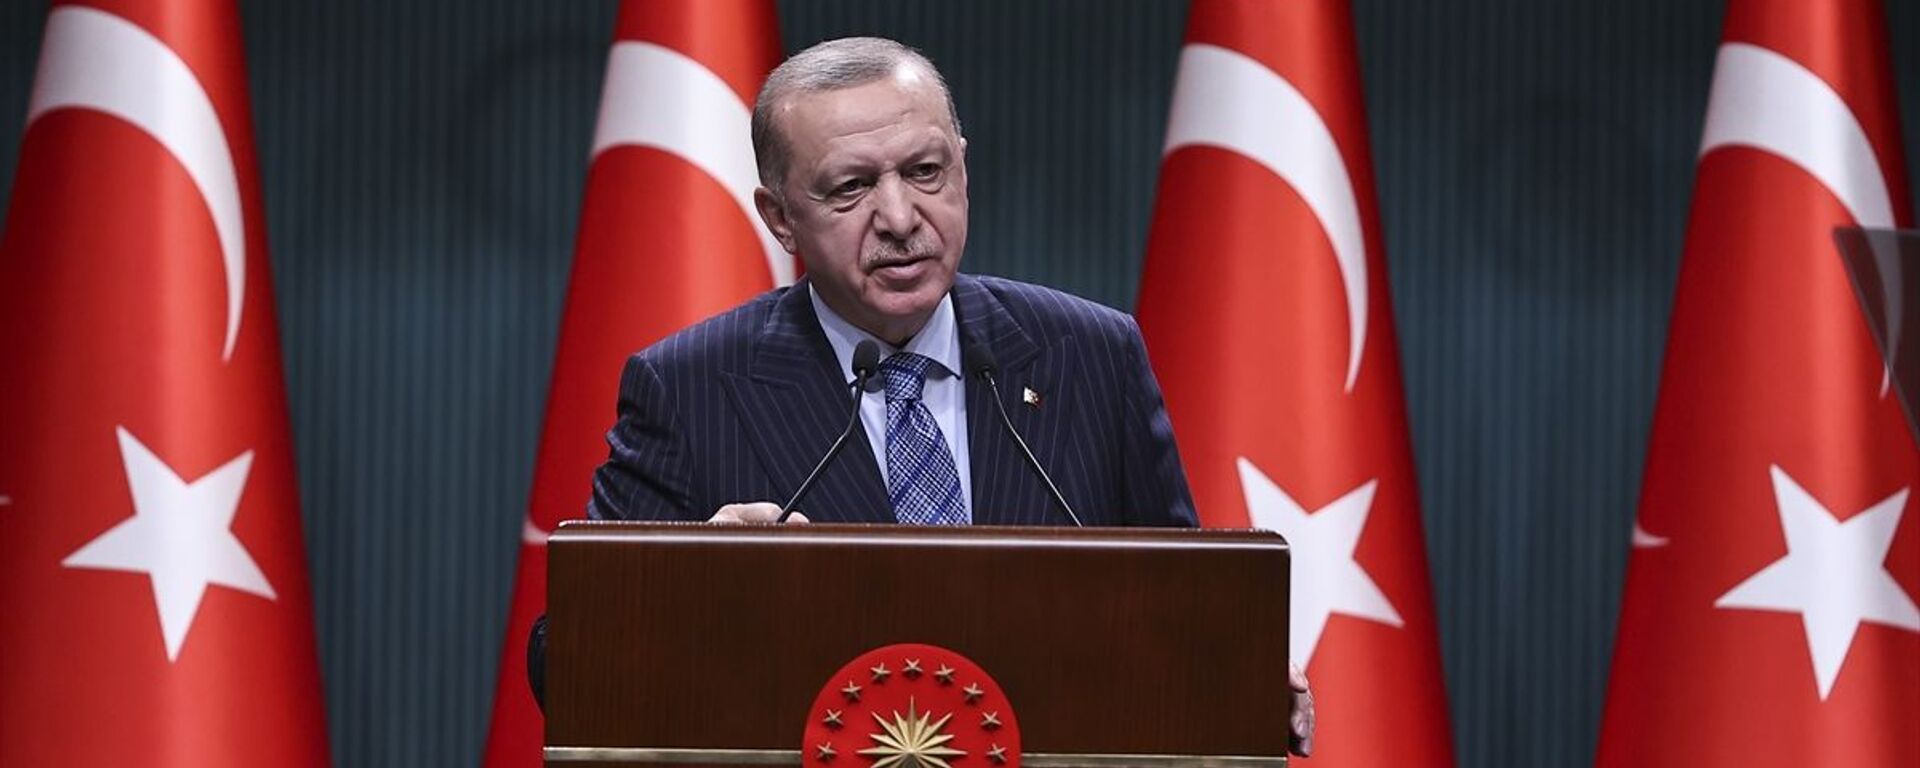 Türkiye Cumhurbaşkanı Recep Tayyip Erdoğan, Cumhurbaşkanlığı Kabine Toplantısı'nın ardından açıklamalarda bulundu. - Sputnik Türkiye, 1920, 05.07.2021